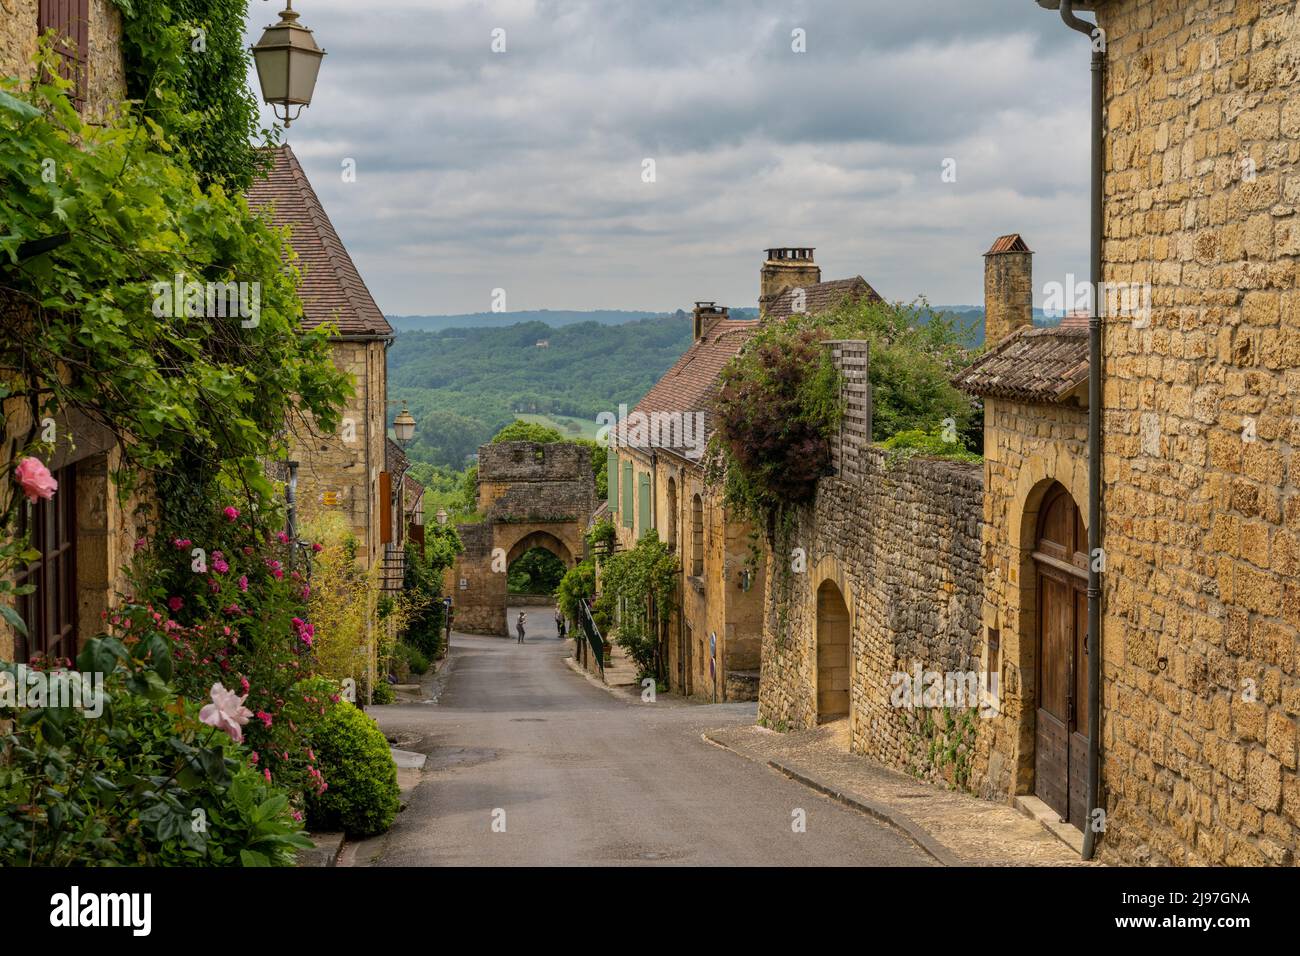 Domme, Francia - 12 maggio, 2022: Strada pittoresca con case in pietra e fiori in fiore nel villaggio storico di Domme nella valle della Dordogna Foto Stock